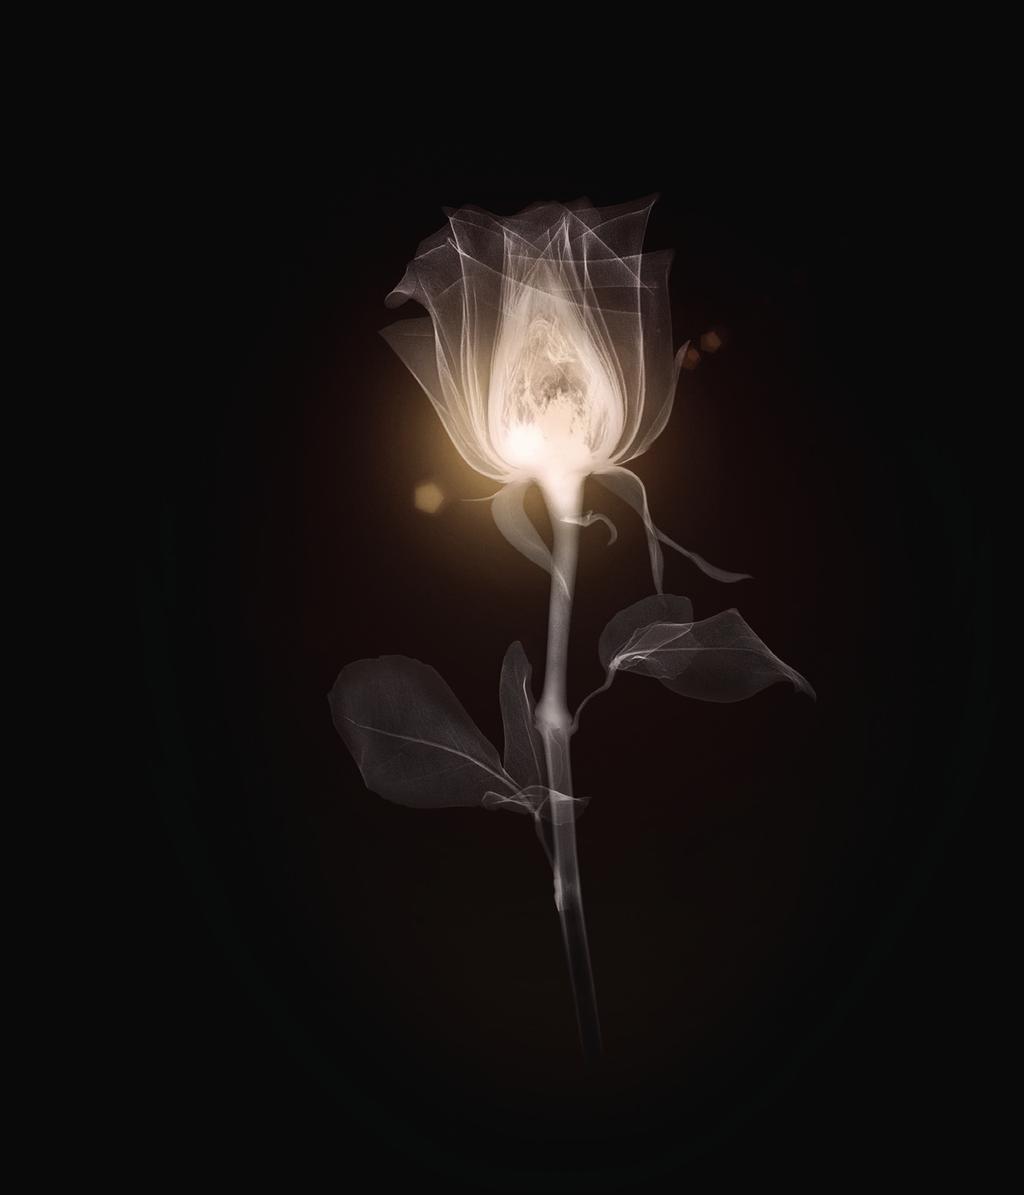 BABOR SCHÖNHEIT IM ZEICHEN DER ROSE. WISSENSCHAFT. Alles begann 1956 mit einer schwarzen Rose, dem Symbol vollkommener Schönheit.